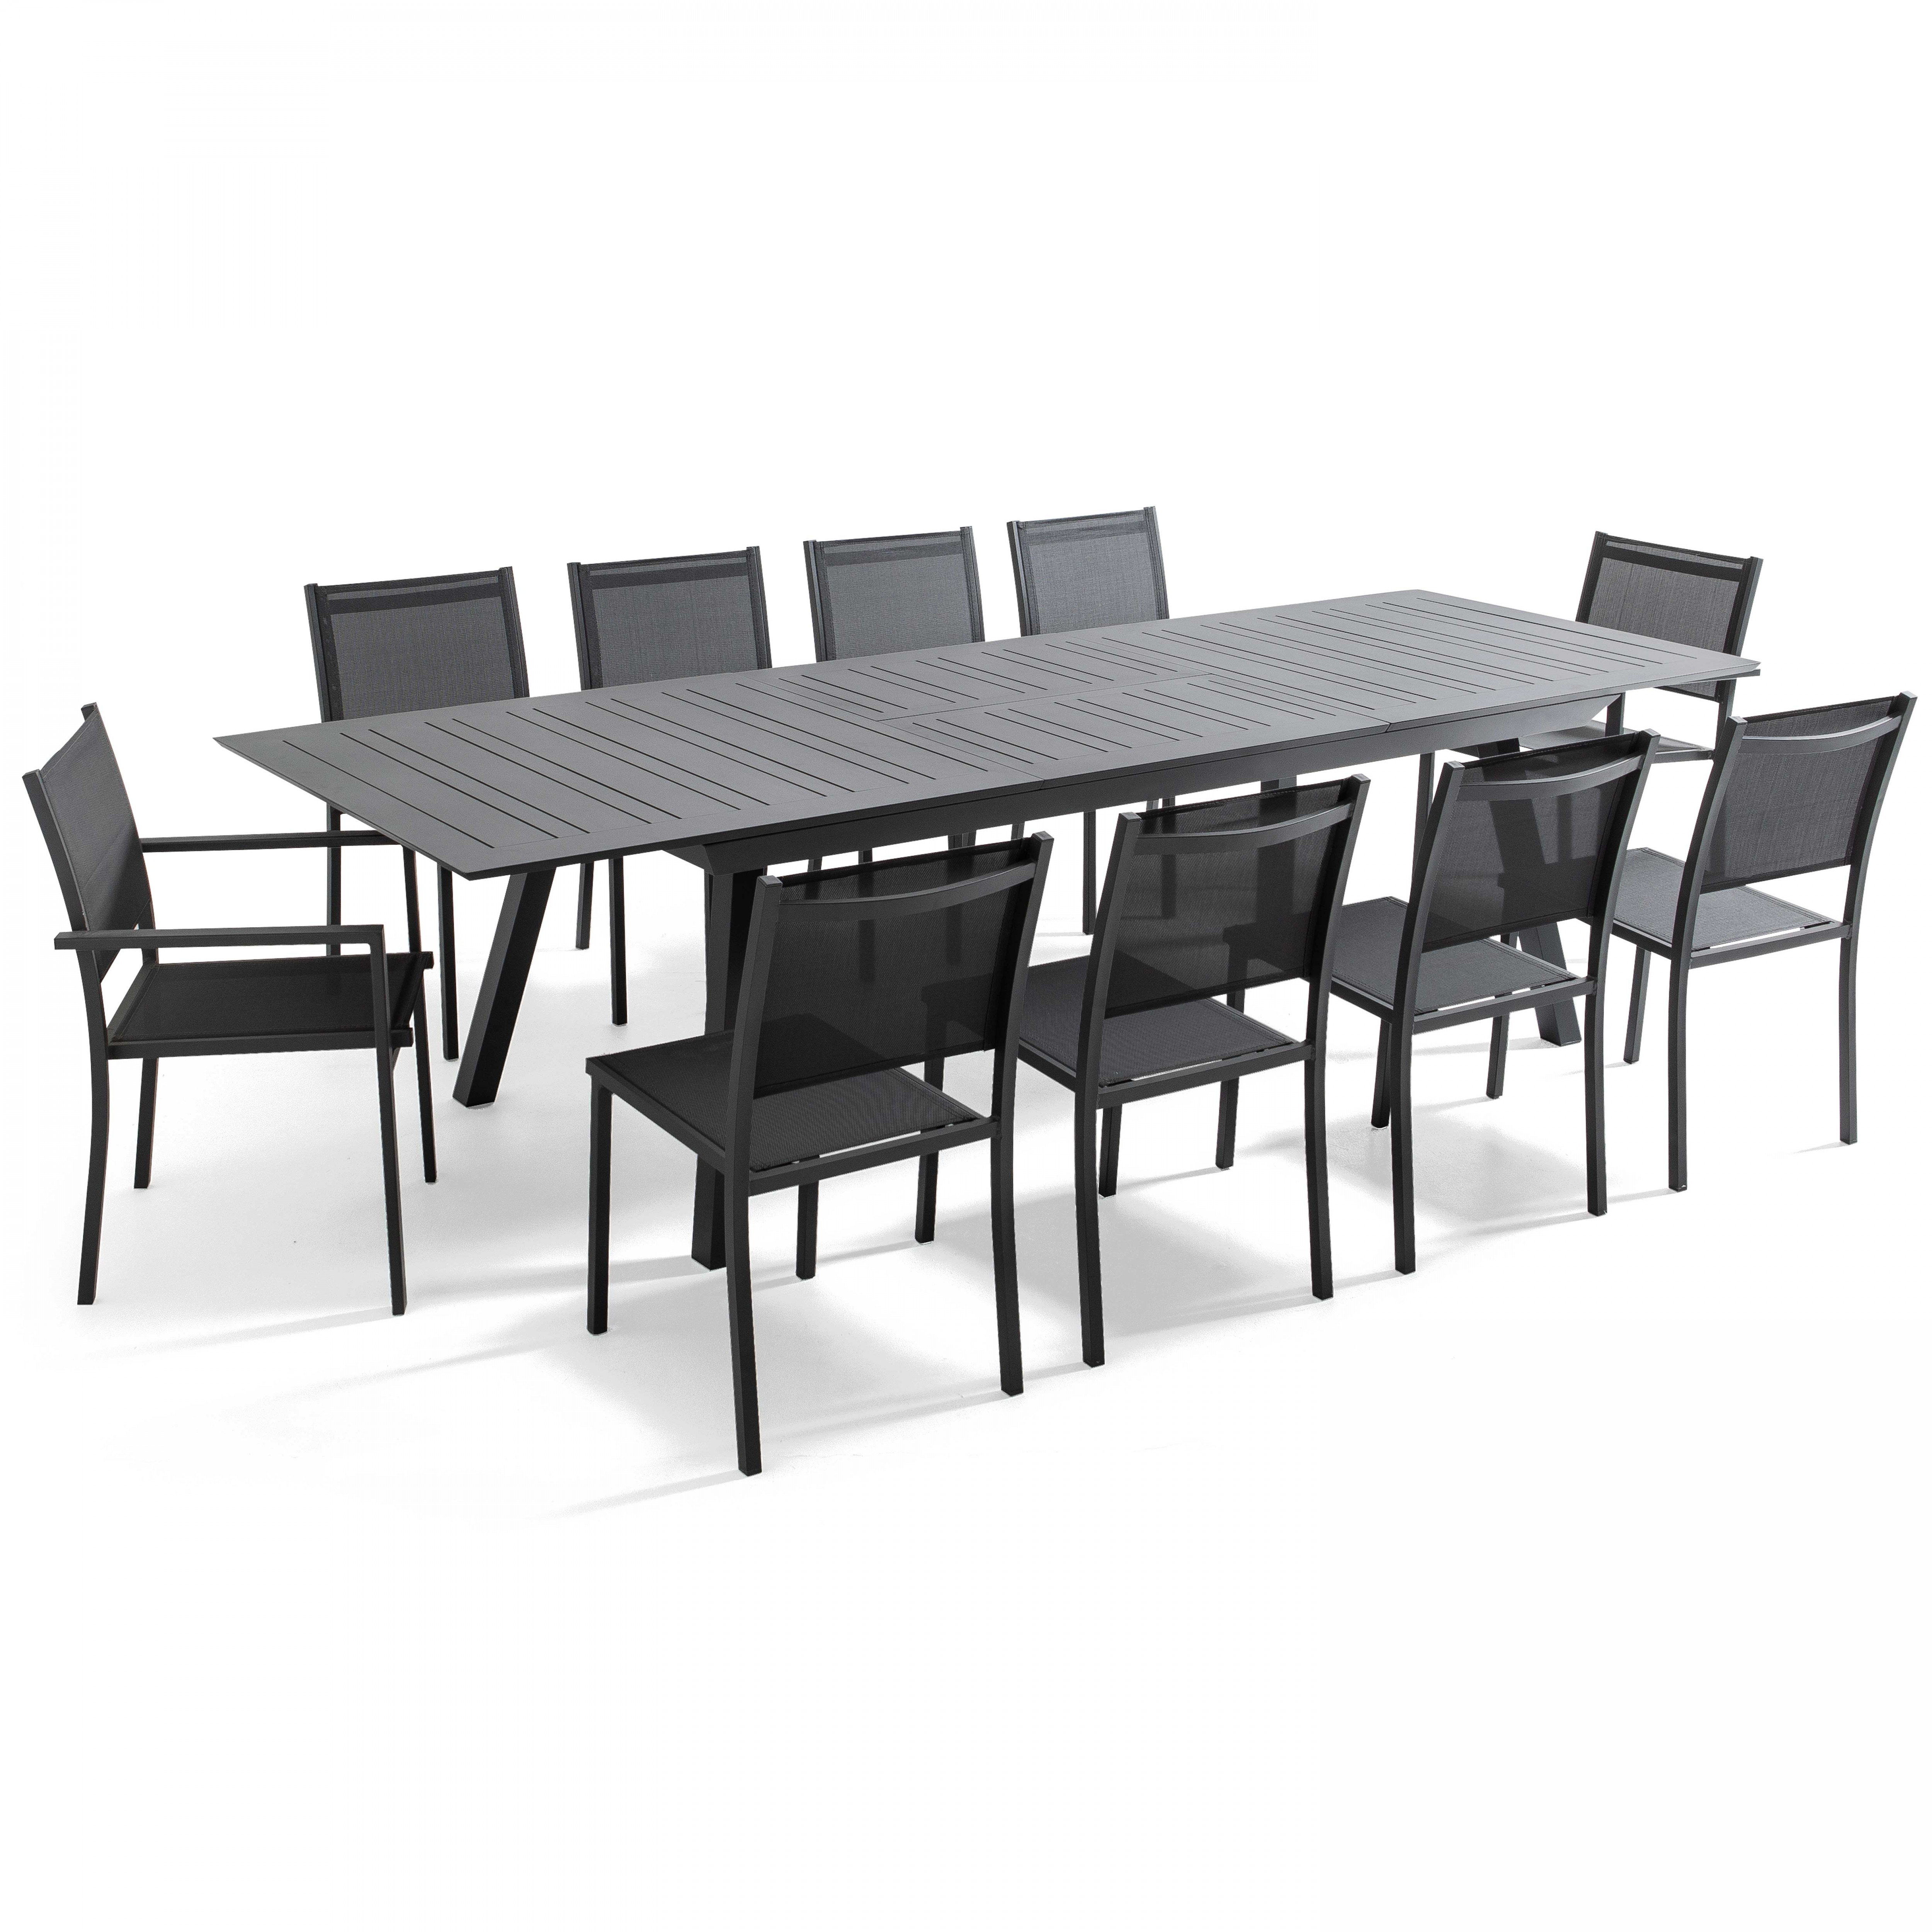 Table en aluminium 10 places table extensible 216/298cm avec 8 chaises et 2 chaises avec accoudoirs